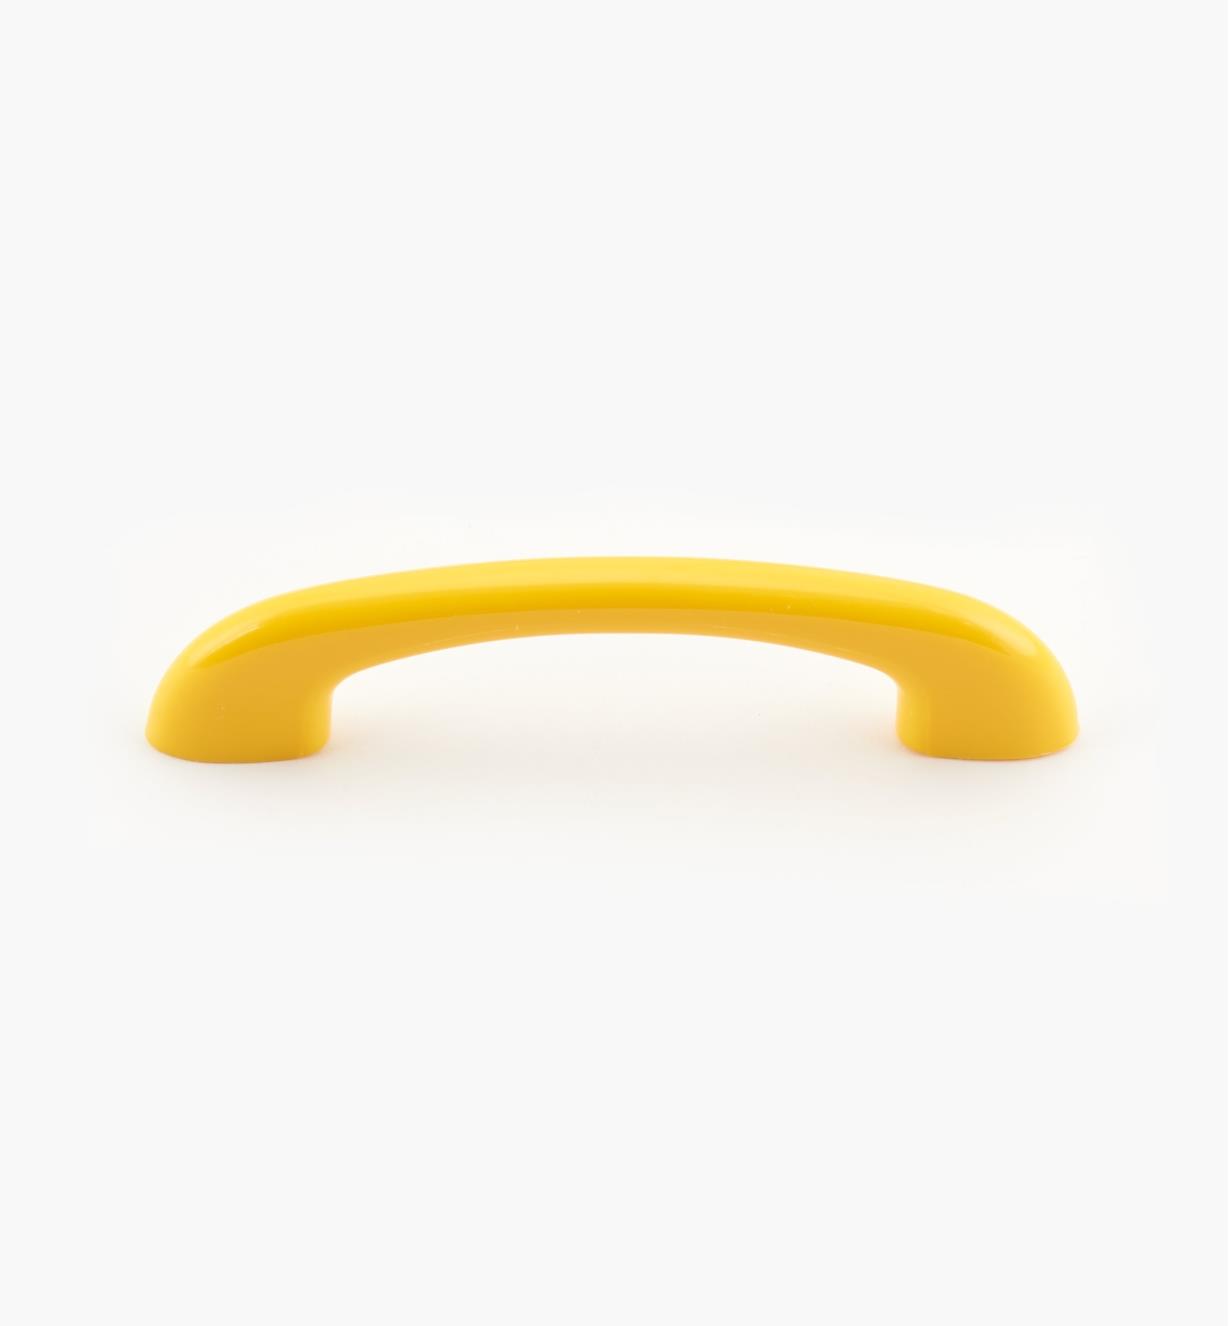 00W3513 - Yellow Handle